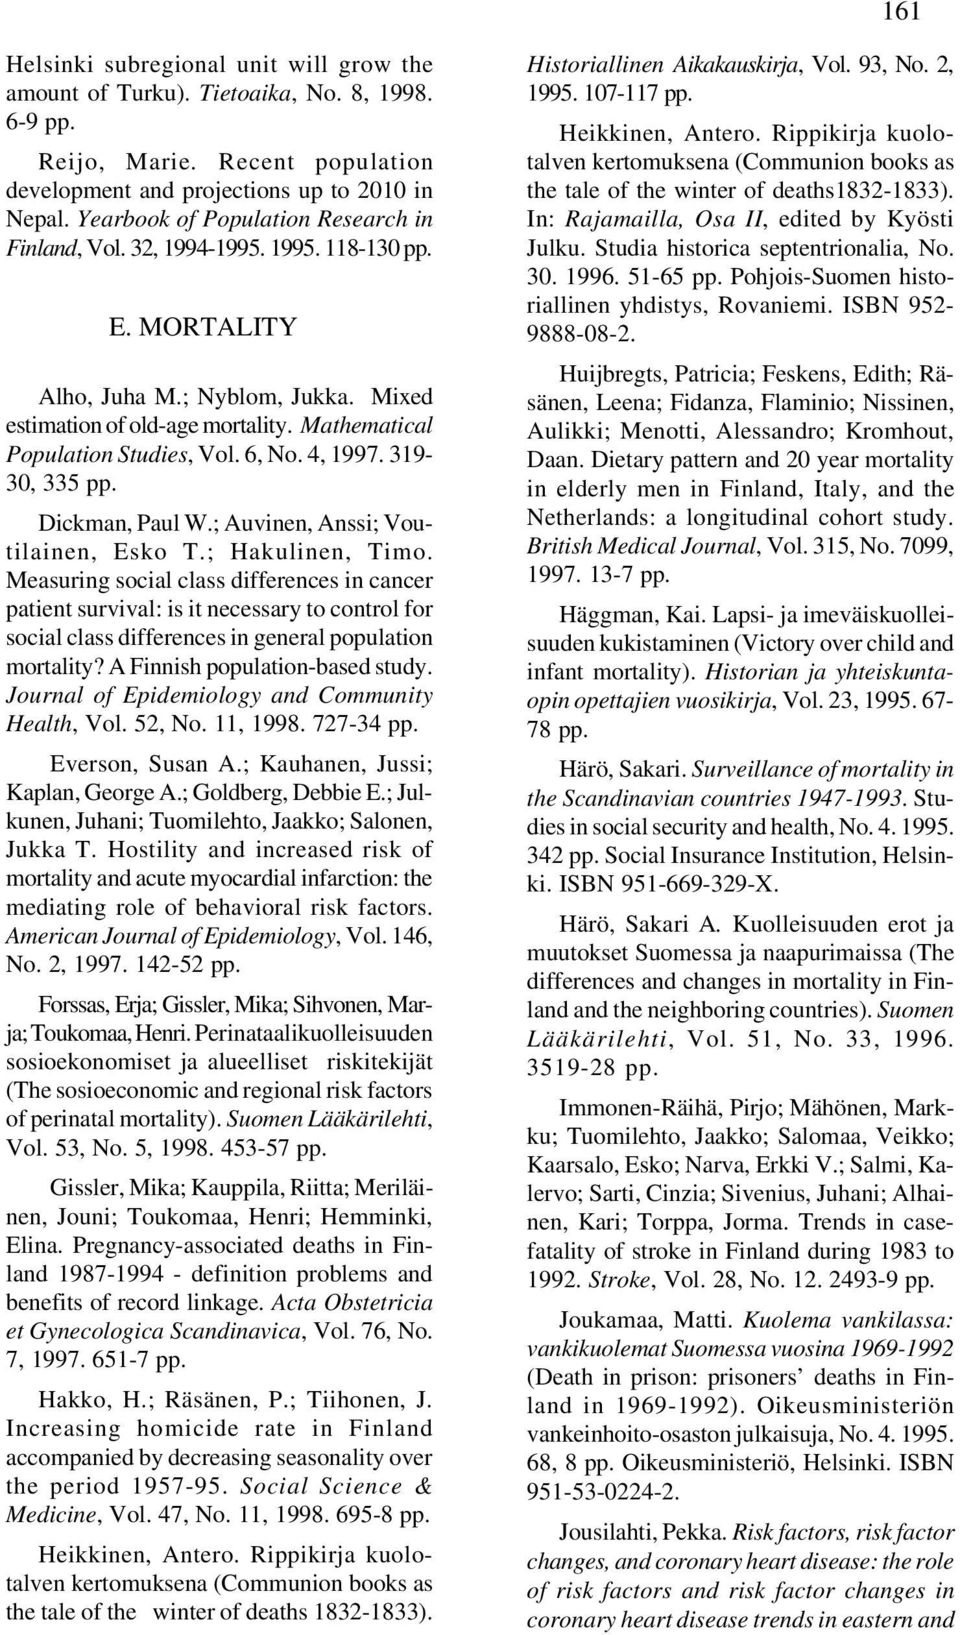 Mathematical Population Studies, Vol. 6, No. 4, 1997. 319-30, 335 pp. Dickman, Paul W.; Auvinen, Anssi; Voutilainen, Esko T.; Hakulinen, Timo.